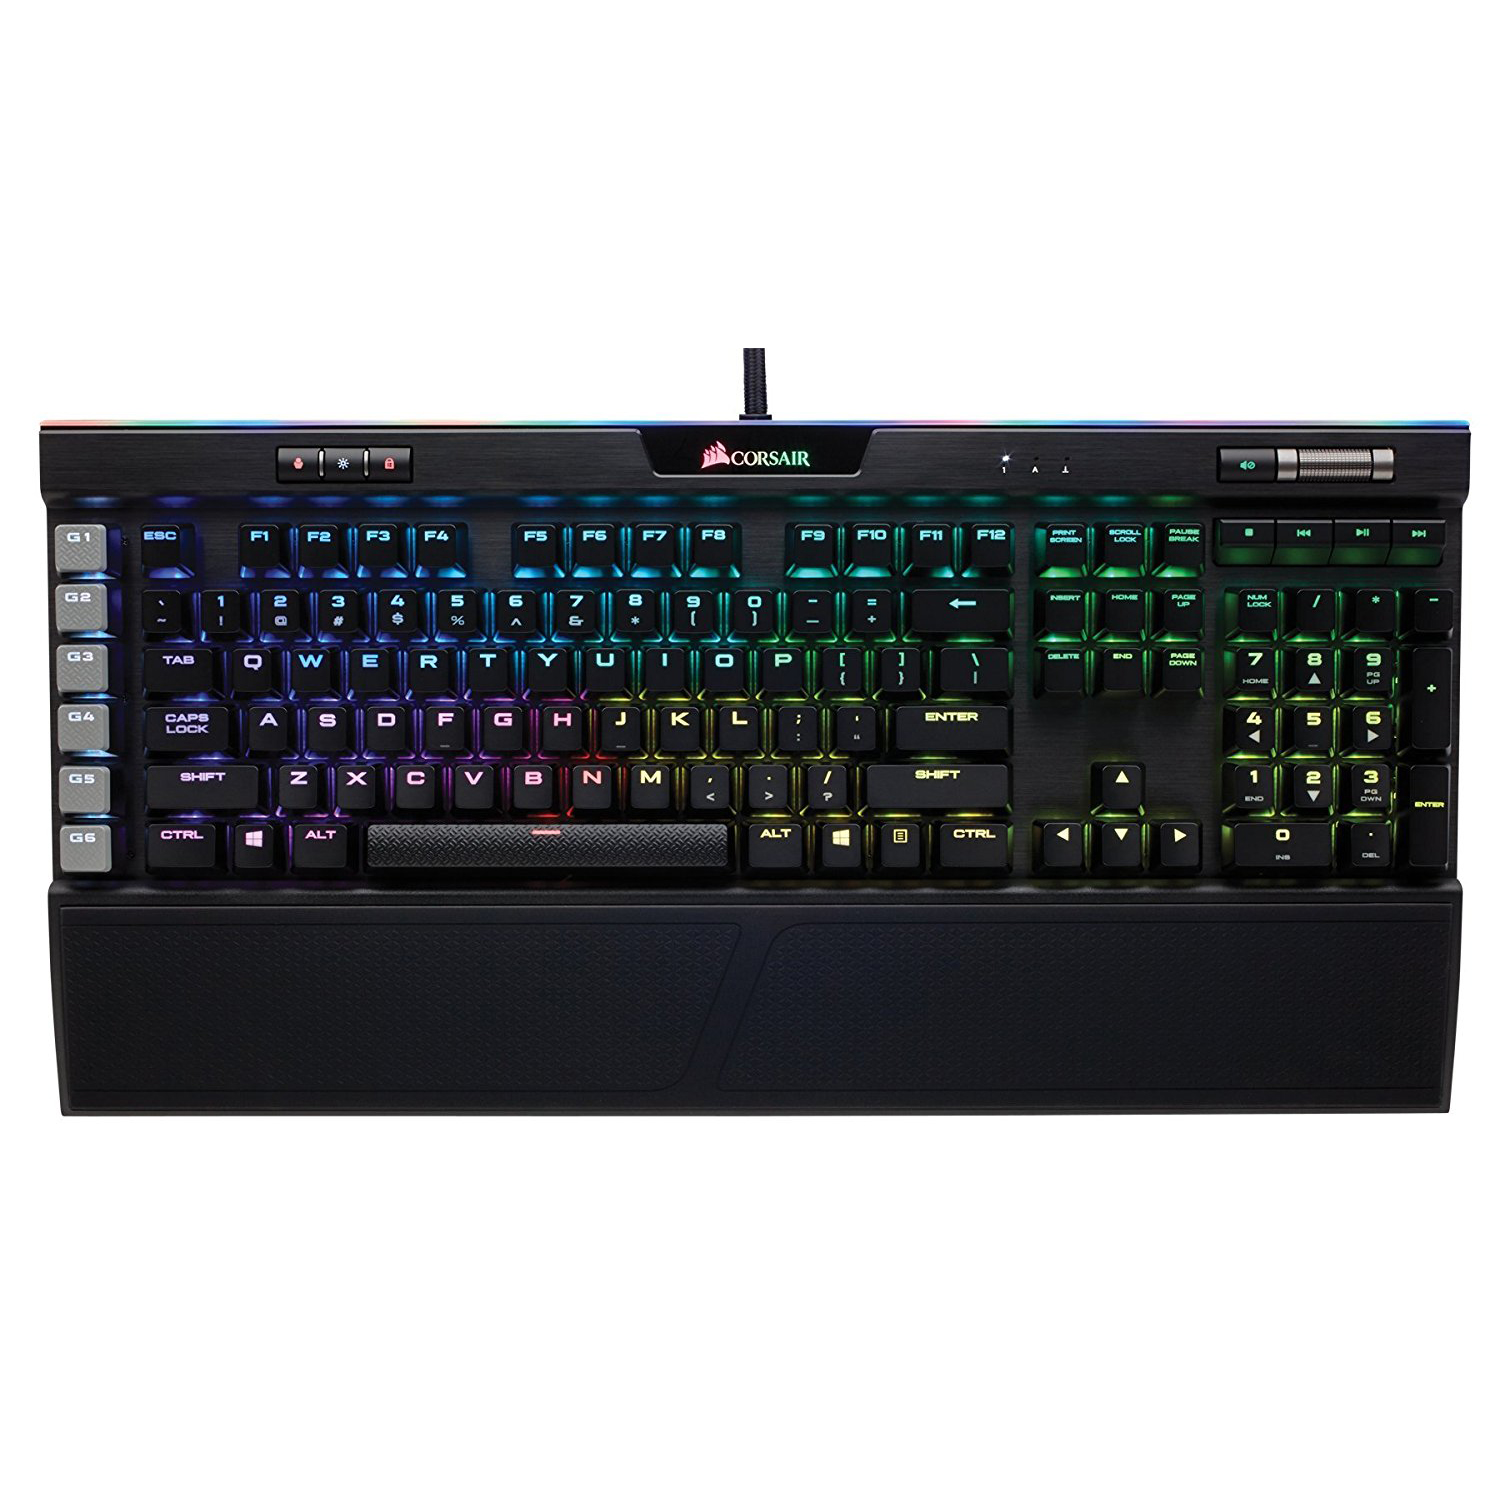 Corsair K95 RGB Platinum, gaming keyboard on a white background